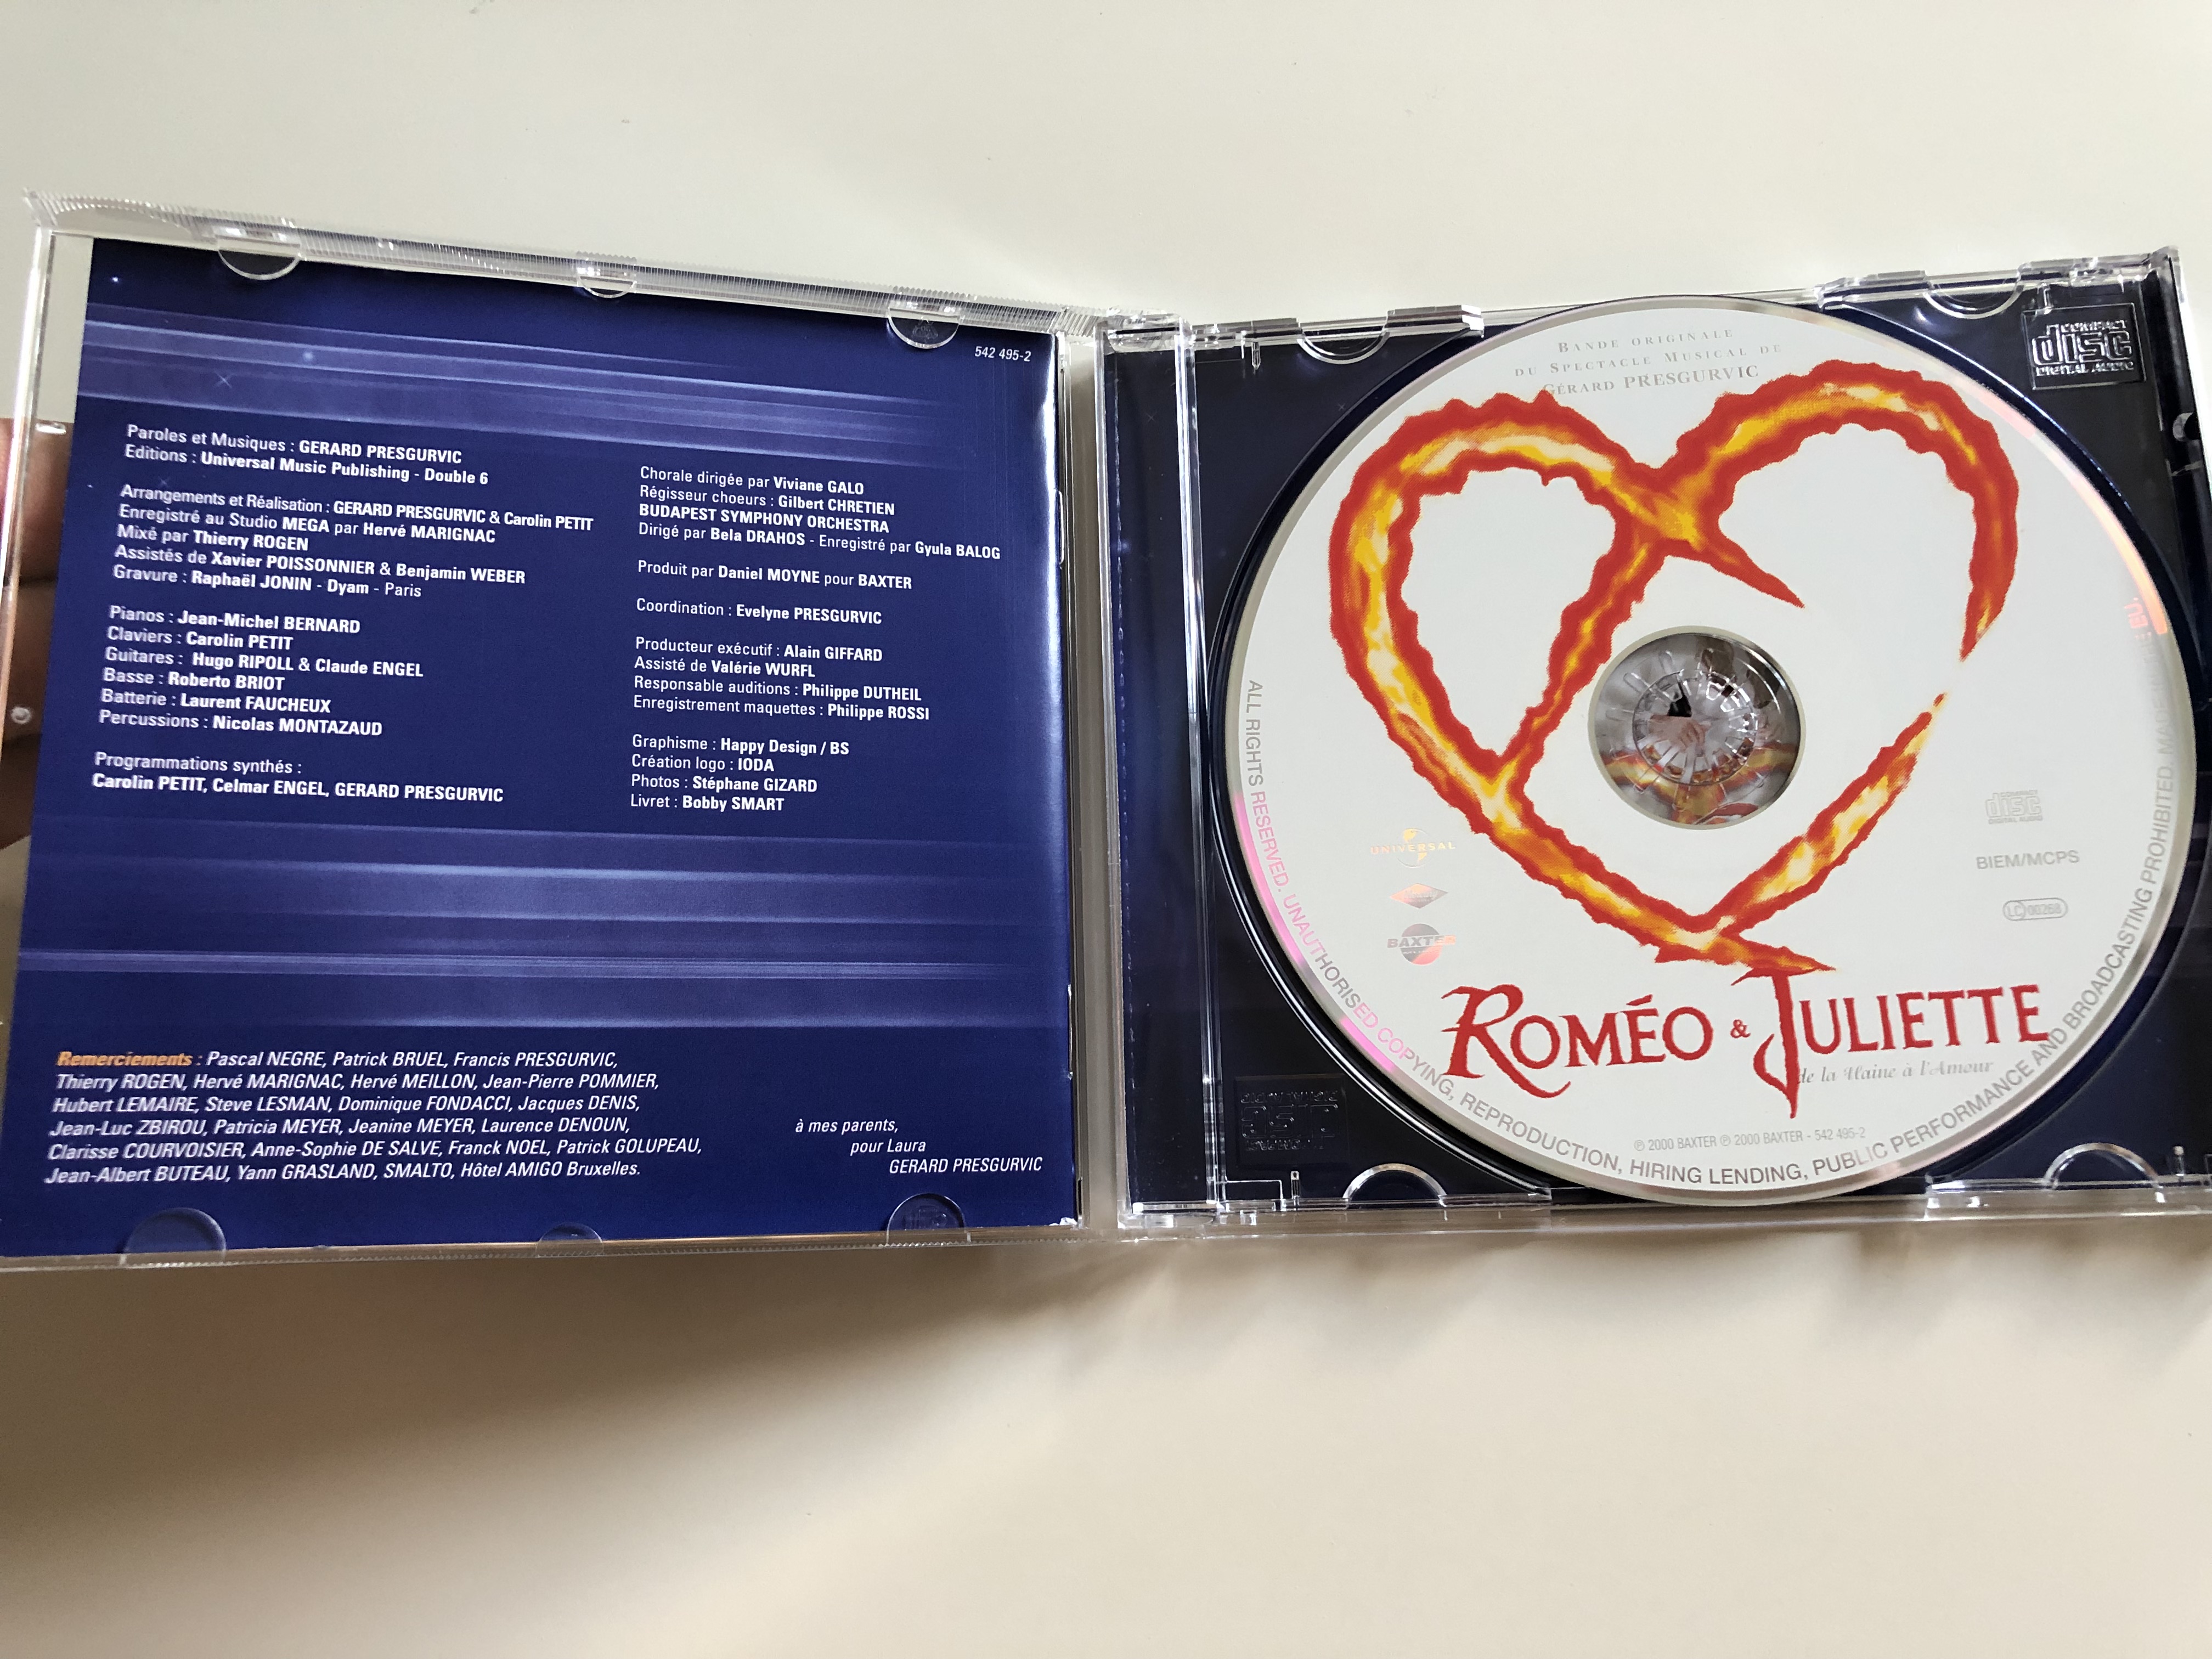 rom-o-juliette-de-la-haine-l-amour-audio-cd-2000-romeo-juliet-from-hatred-to-love-bande-originale-du-spectacle-musical-de-gerard-presgurvic-d-apr-s-l-ceuvre-de-william-shakespeare-2-.jpg